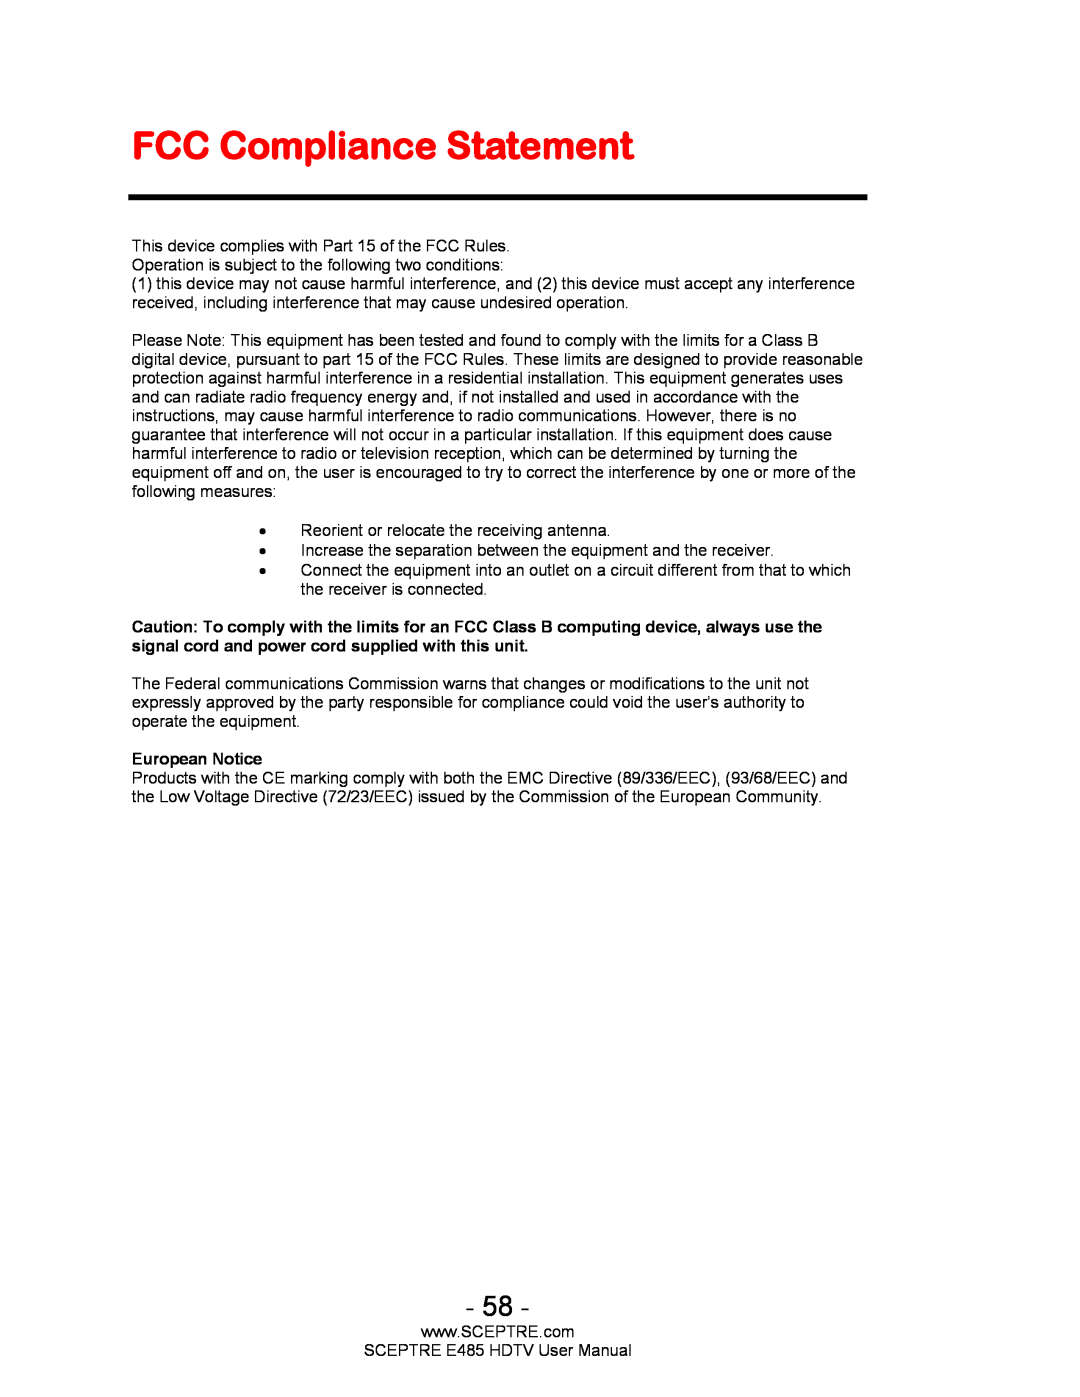 Sceptre Technologies E485 user manual FCC Compliance Statement, European Notice 